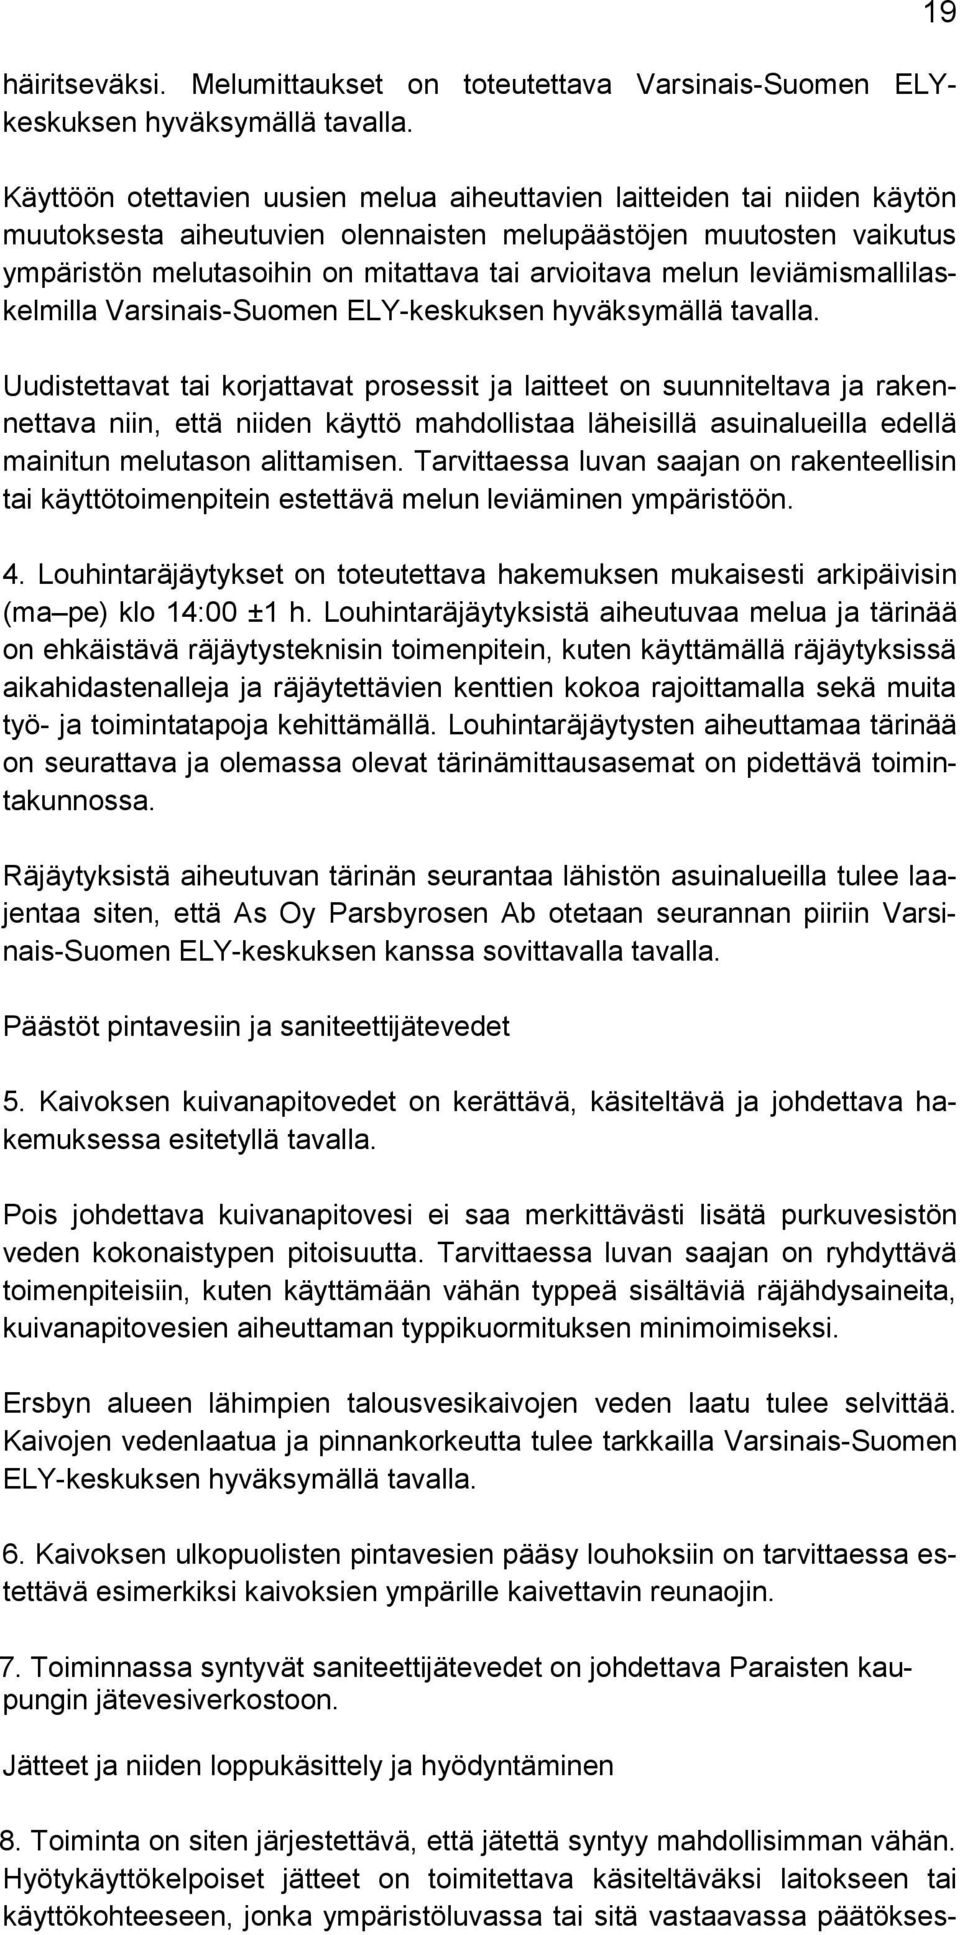 melun leviämismallilaskelmilla Varsinais-Suomen ELY-keskuksen hyväksymällä tavalla.